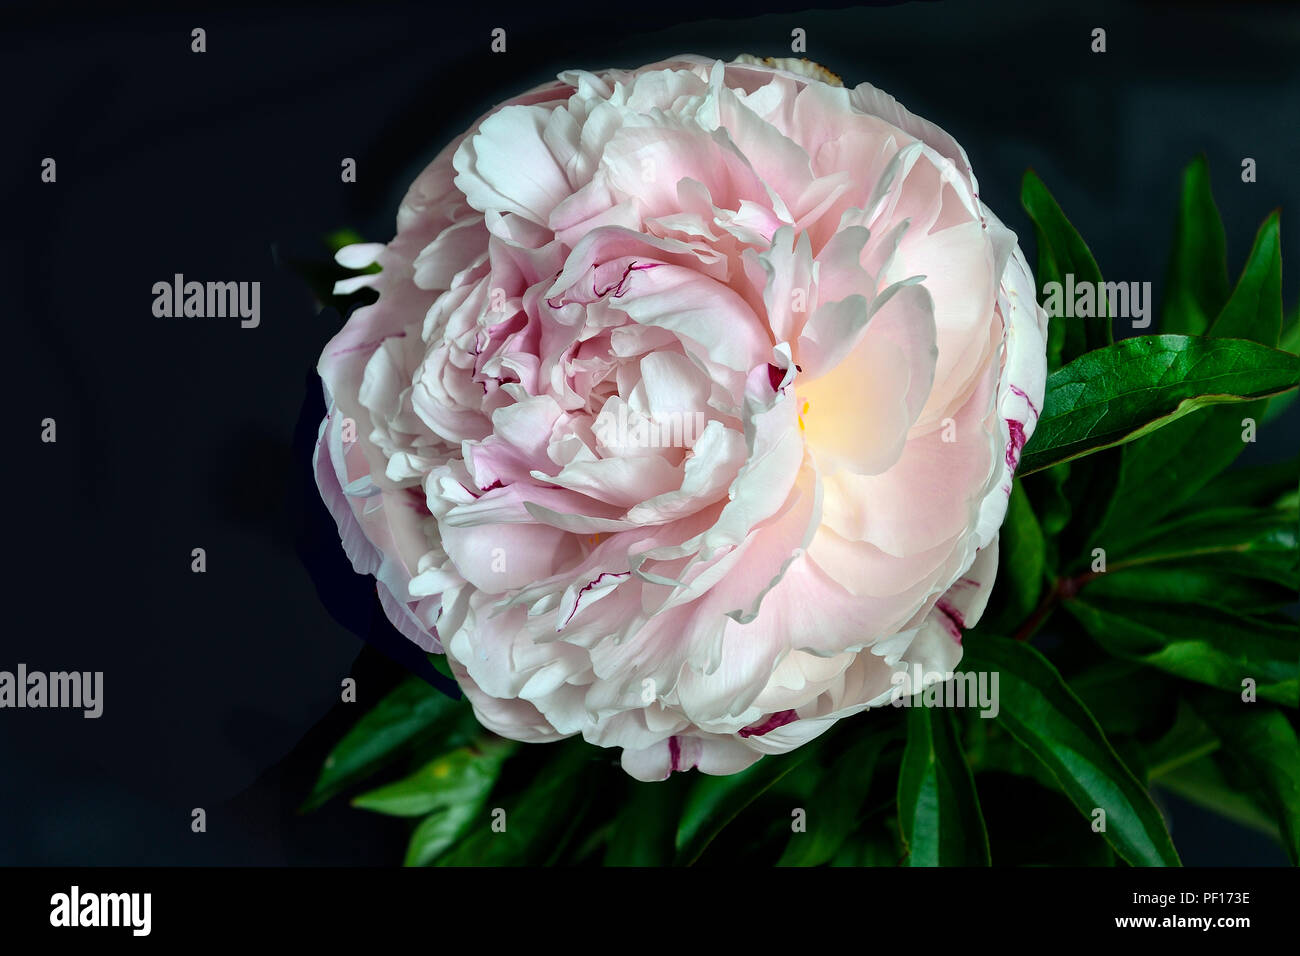 Schönen sanften Weiß-Rosa Pfingstrose in der Nähe auf einem schwarzen Hintergrund mit grünen Blättern getrennt. Blumen mit zarten Blüten und zarten Aroma. Konzept Stockfoto